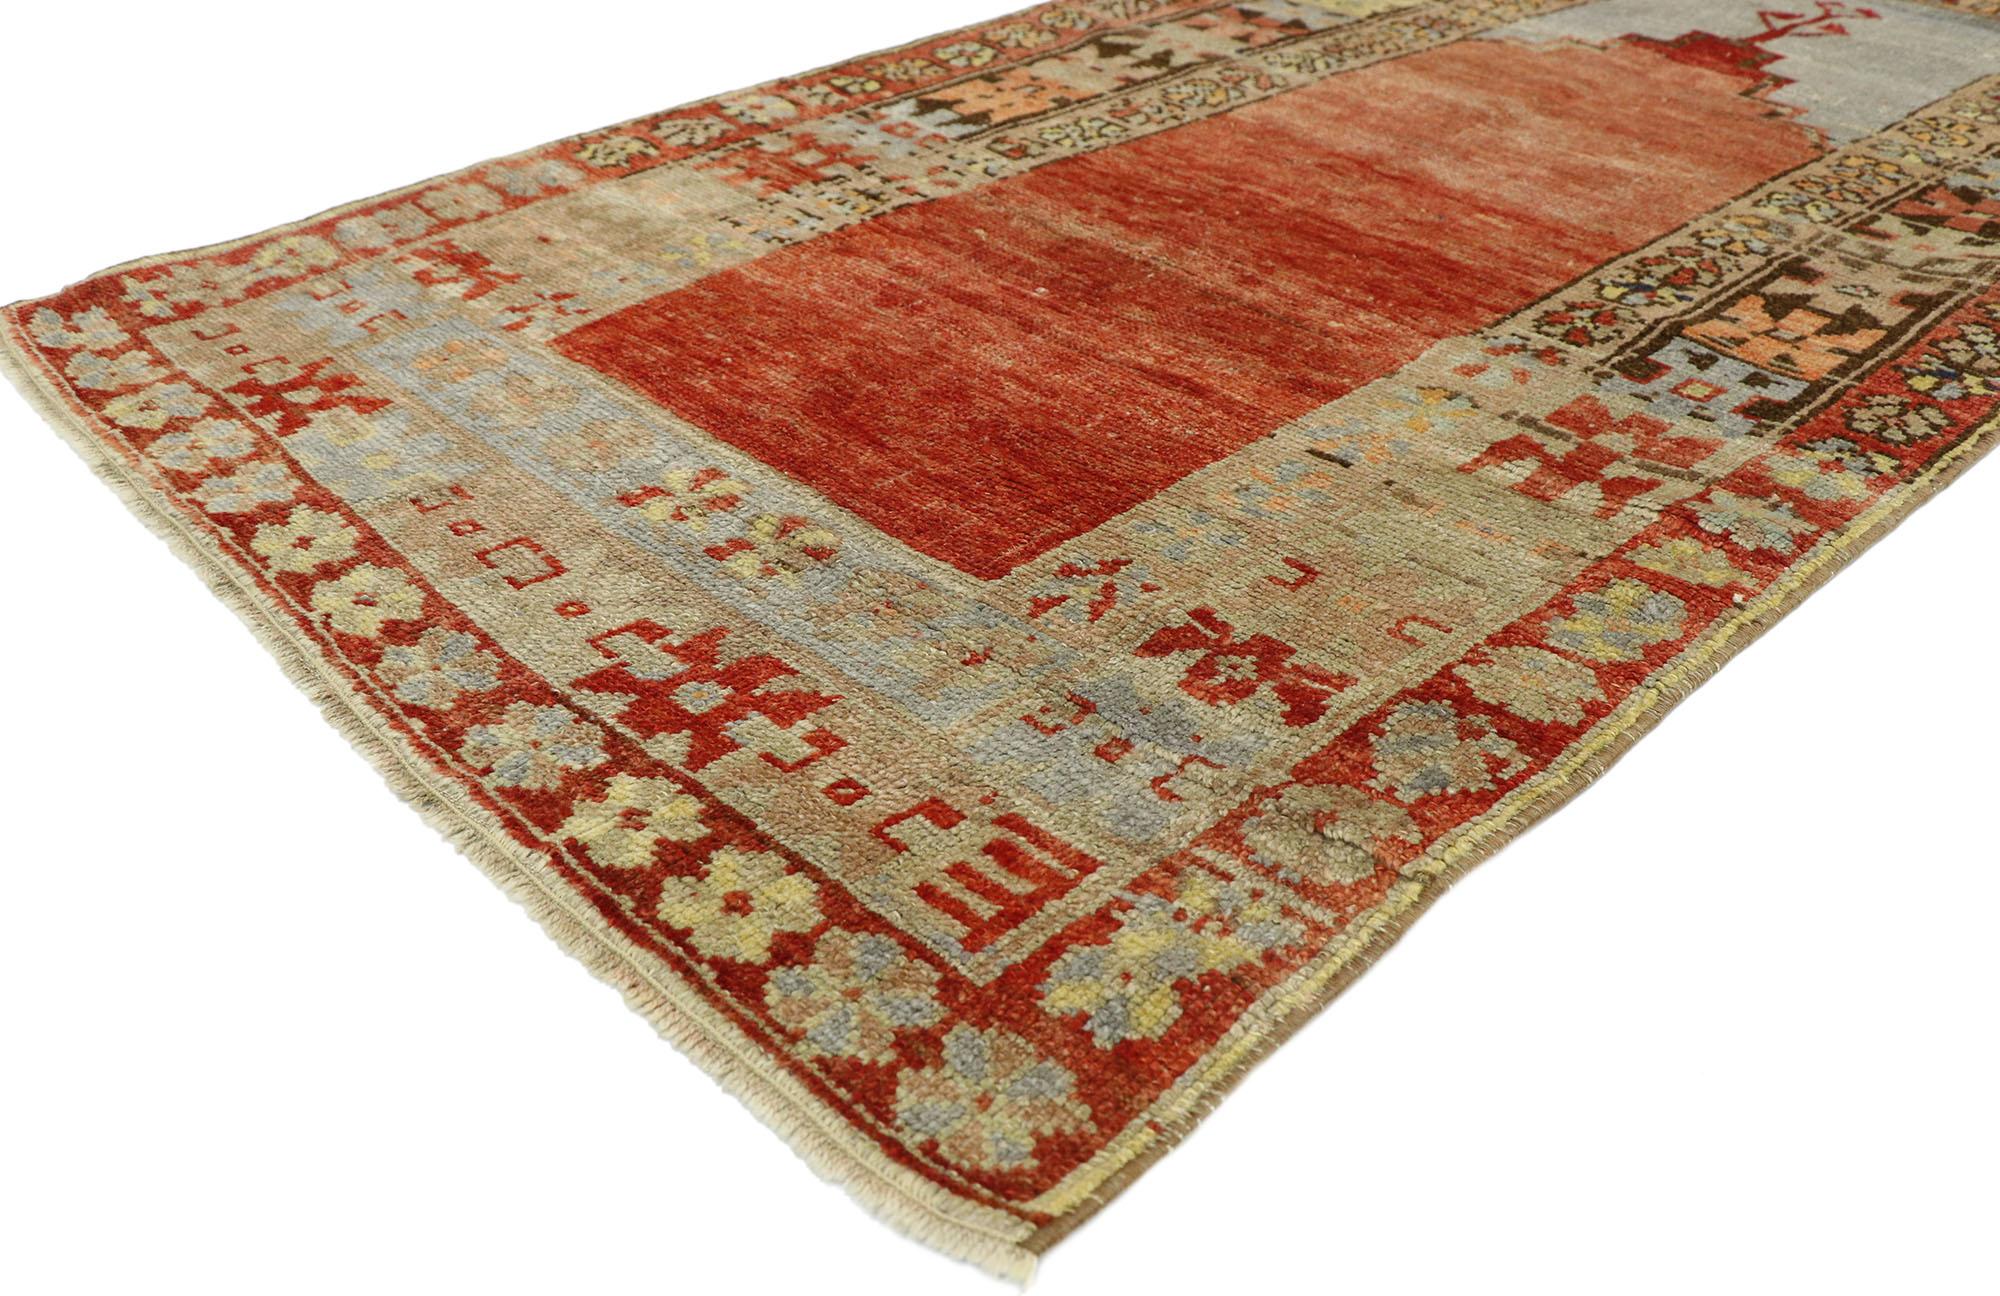 52748 Vintage türkischer Oushak Gebetsteppich, Anatolischer Gebetsteppich. Dieser handgeknüpfte türkische Gebetsteppich aus Wolle, eingebettet in die anatolische Geschichte und die raffinierten Farben, verbindet Schlichtheit mit Raffinesse. Sie